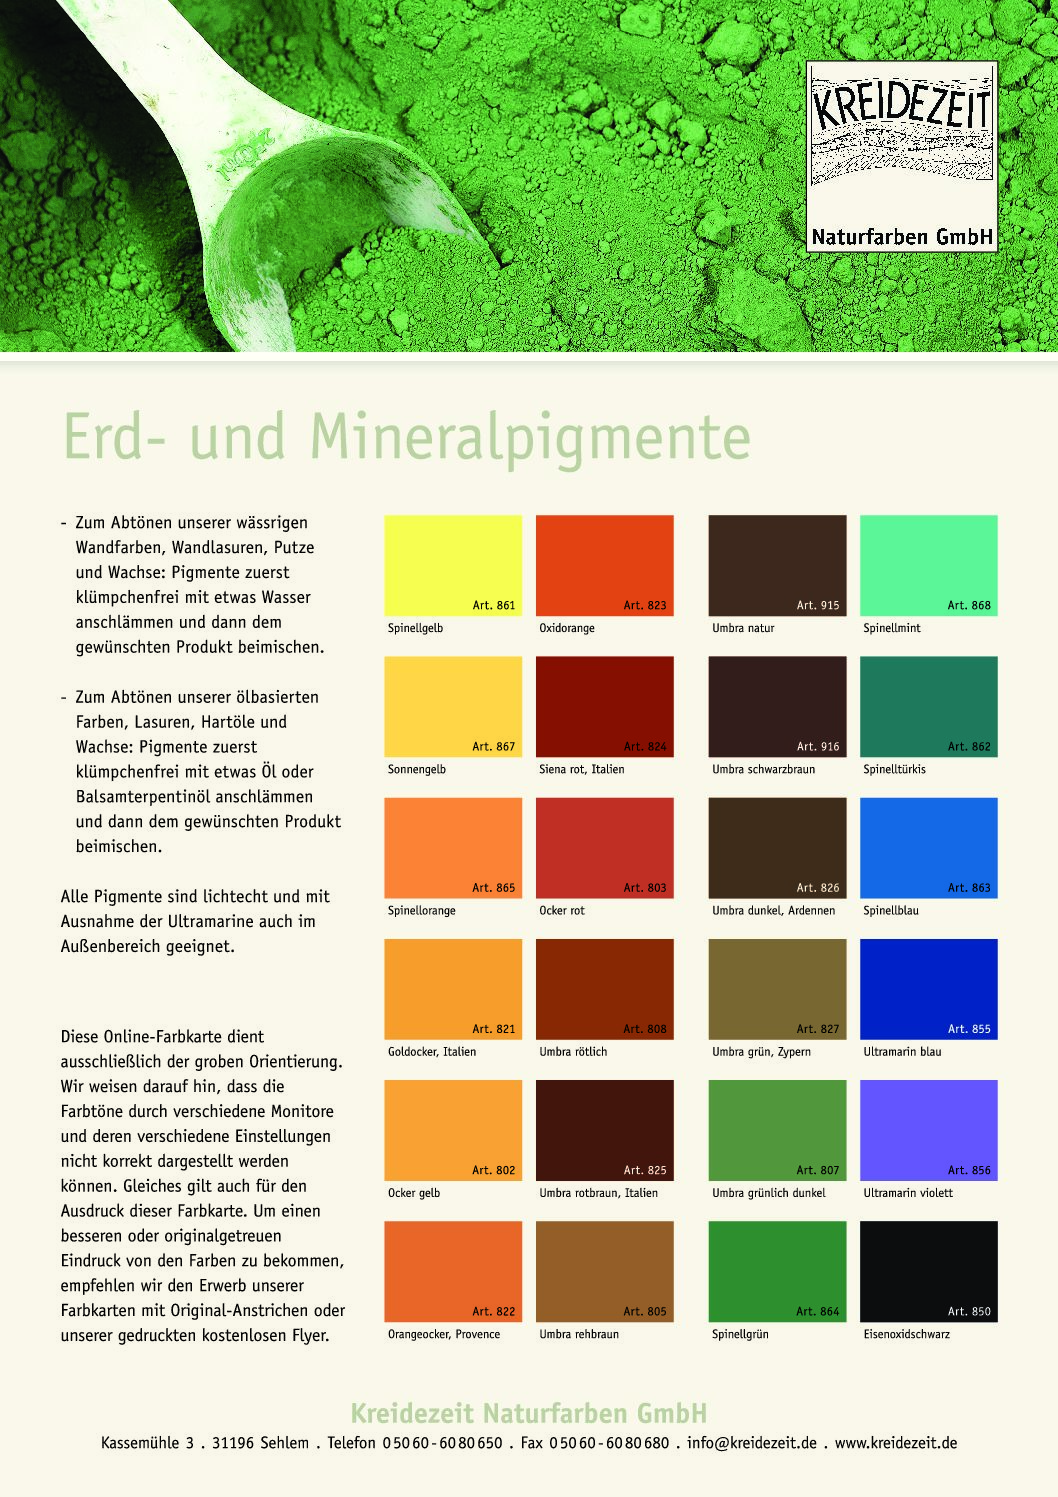 Farbkarte Erd-Mineral Pigmente - Klicken zum Download als PDF